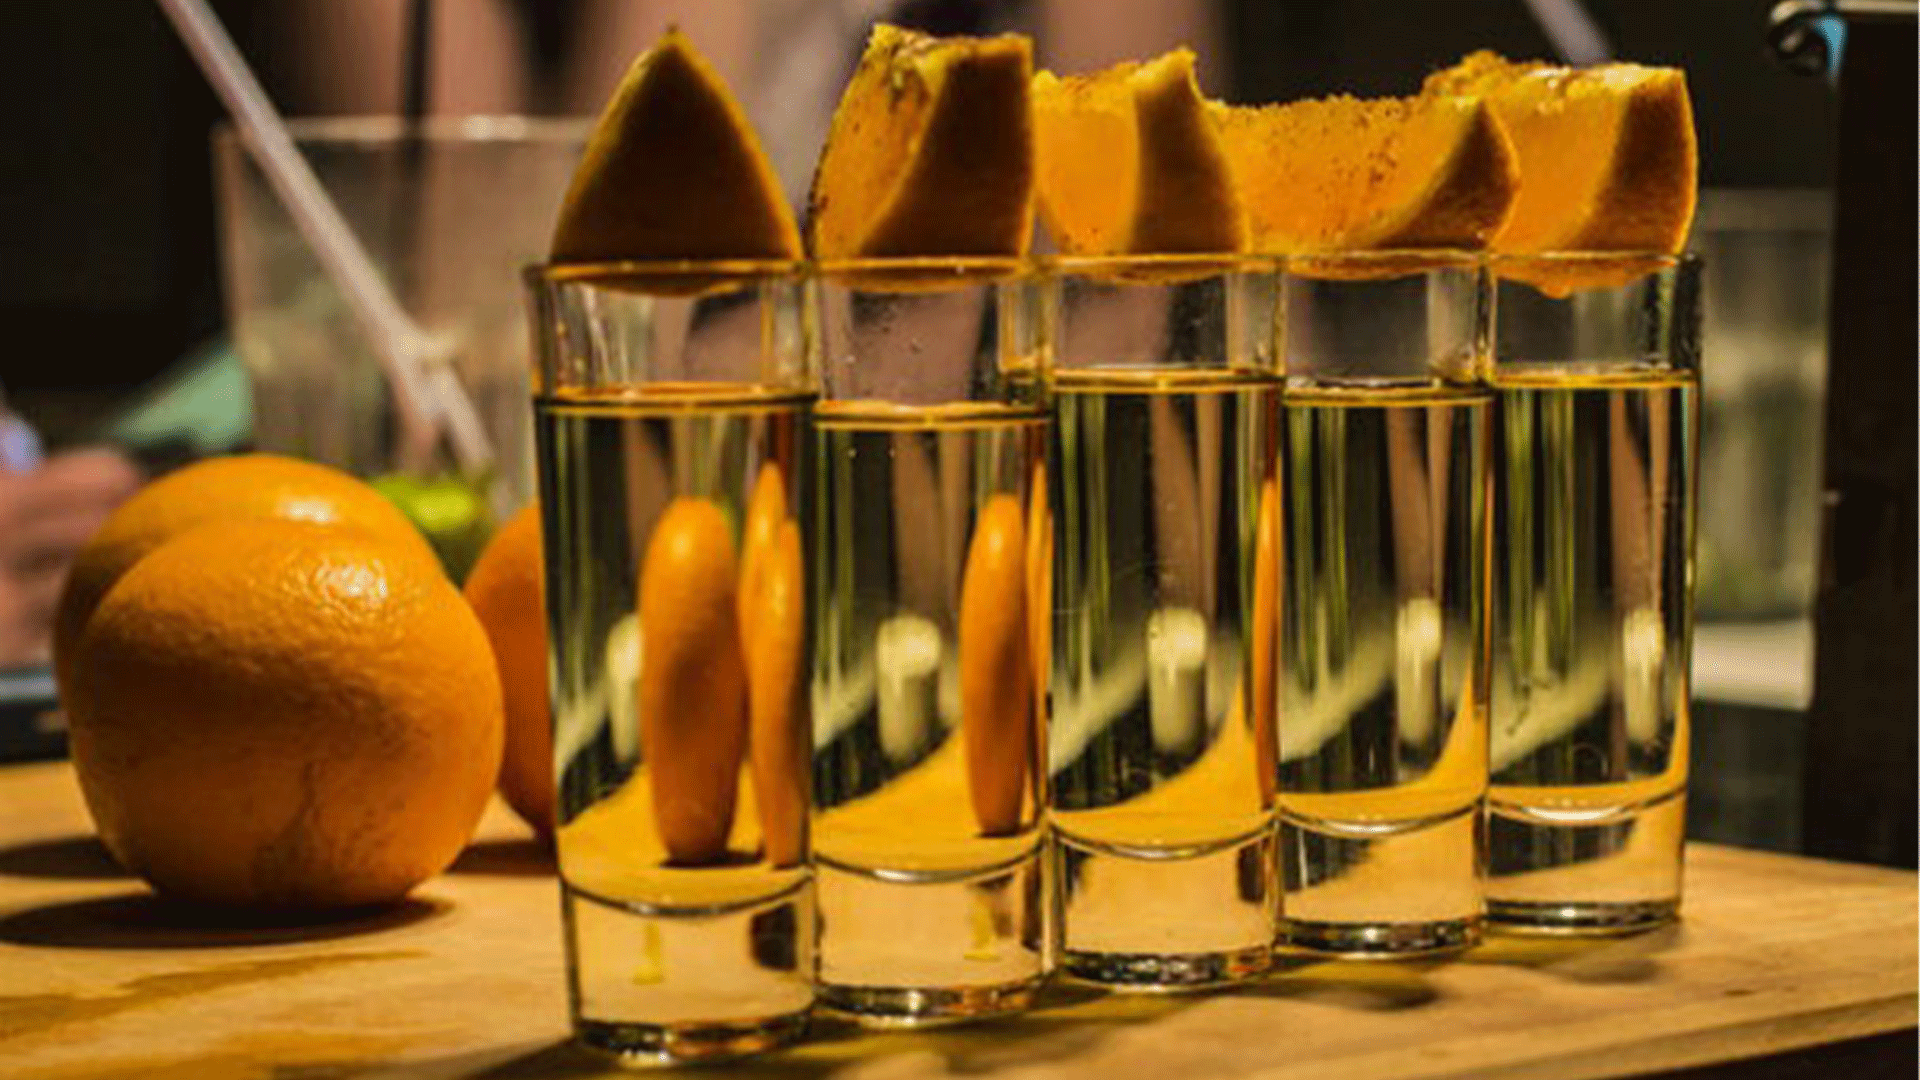 becherovka-small-glasses-oranges